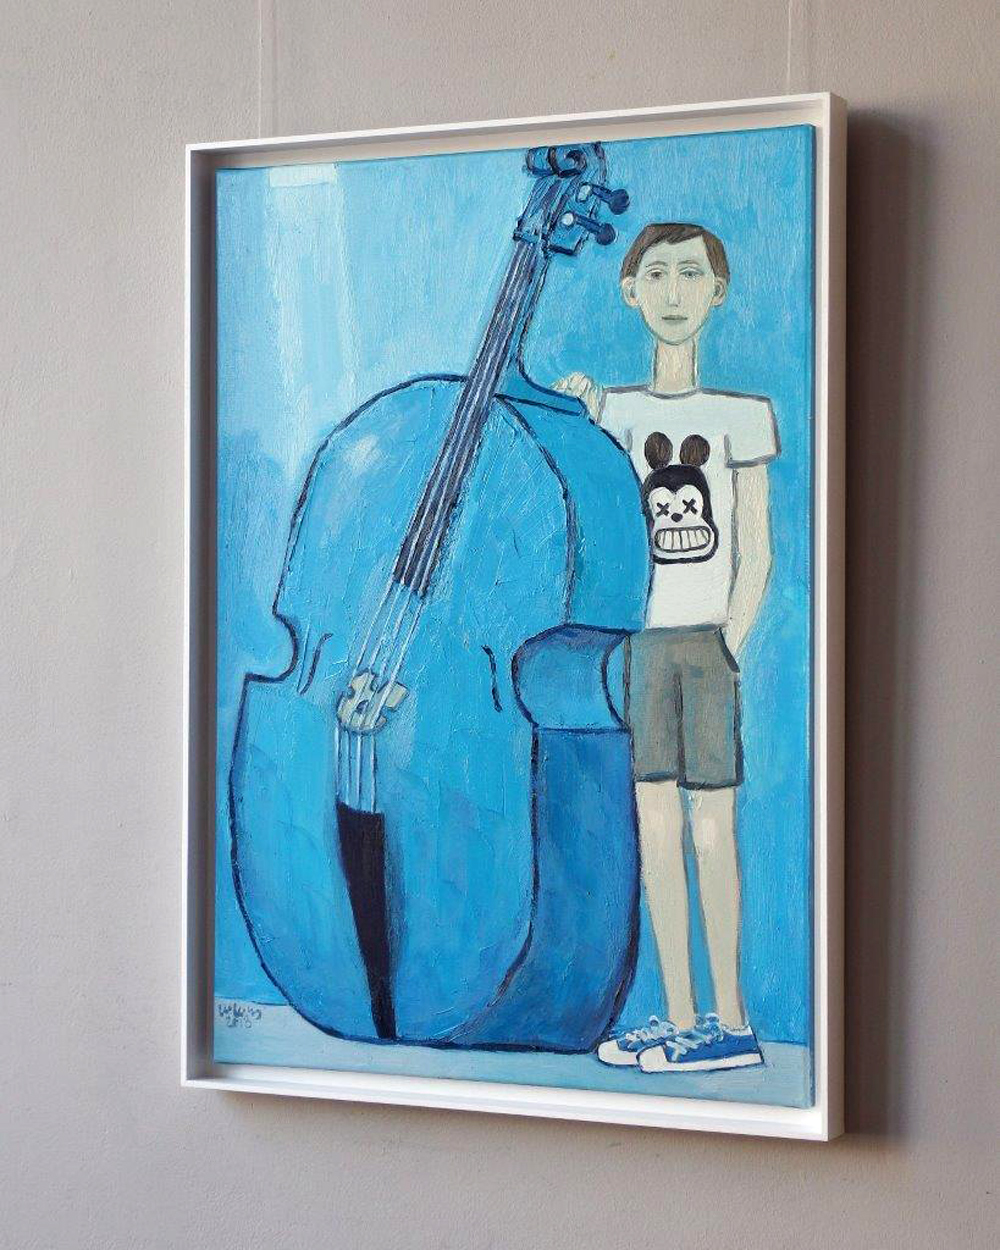 Krzysztof Kokoryn - Boy with double bass (Oil on Canvas | Size: 76 x 106 cm | Price: 6500 PLN)